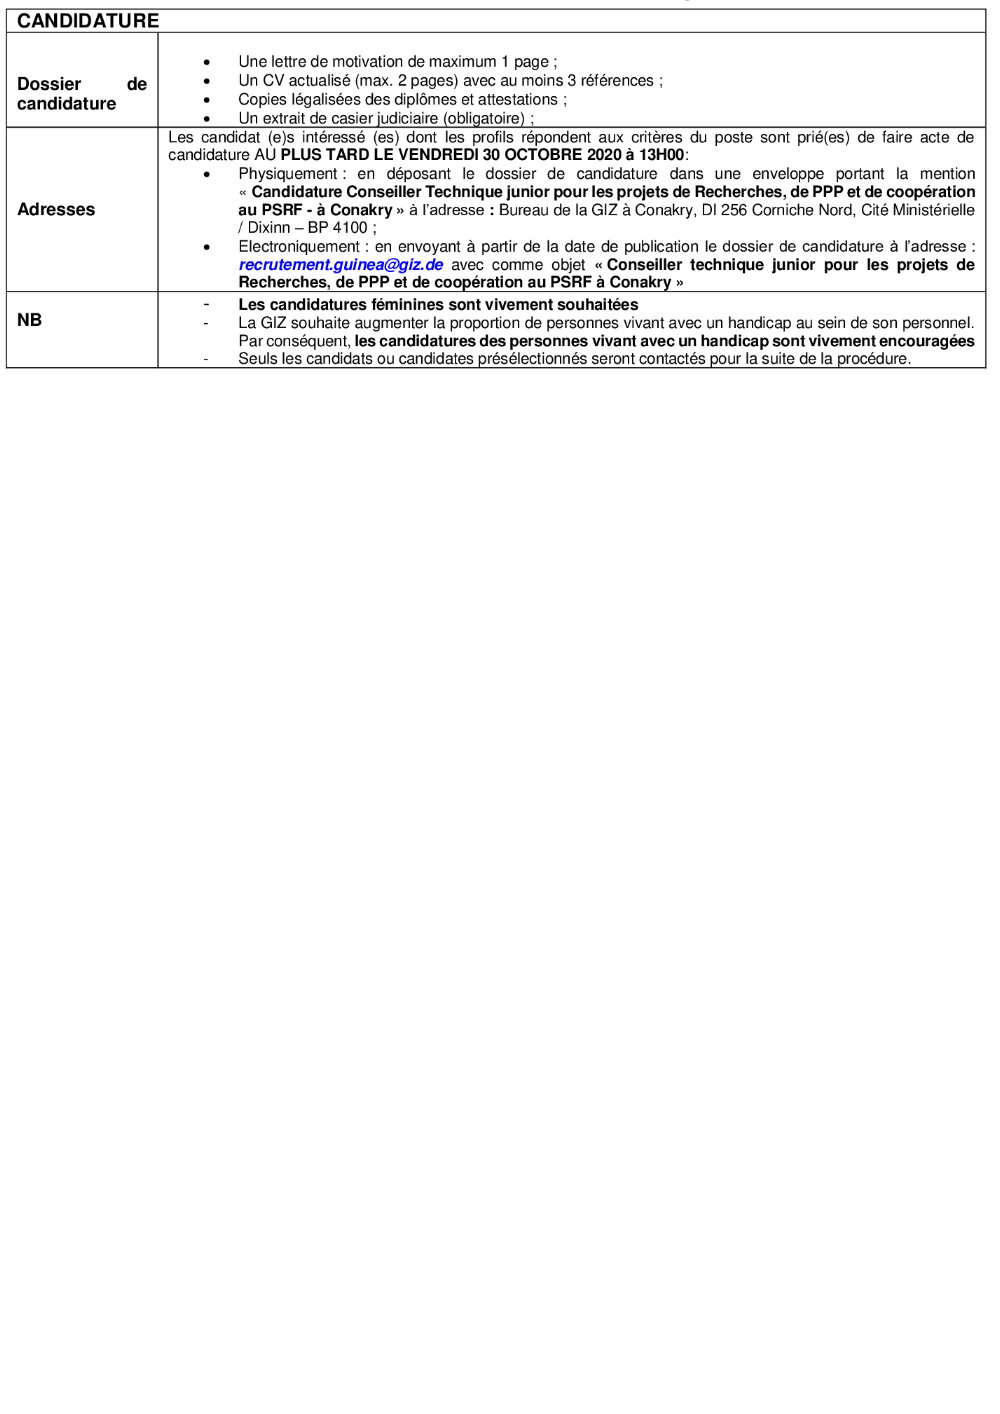 Recrutement d'Un Conseiller technique par giz en guinée - offre d'emploi Giz - page 3